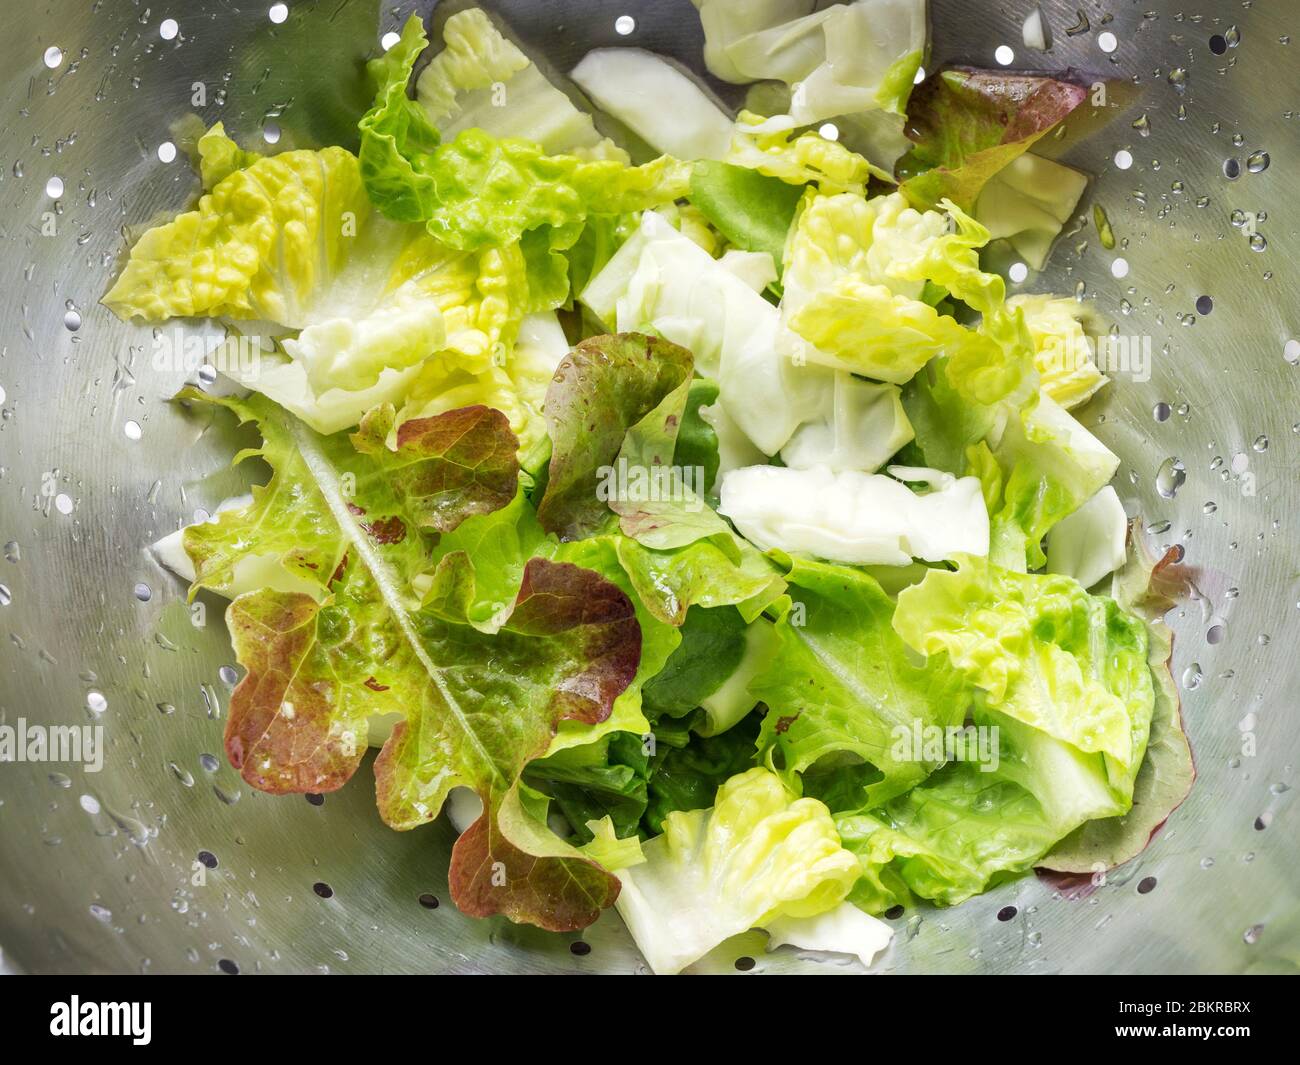 Frisch gemischter grüner Salat aus Salatblättern, darunter Eichenblatt Salatschüssel und Romaine Salat in einem Sieb Stockfoto